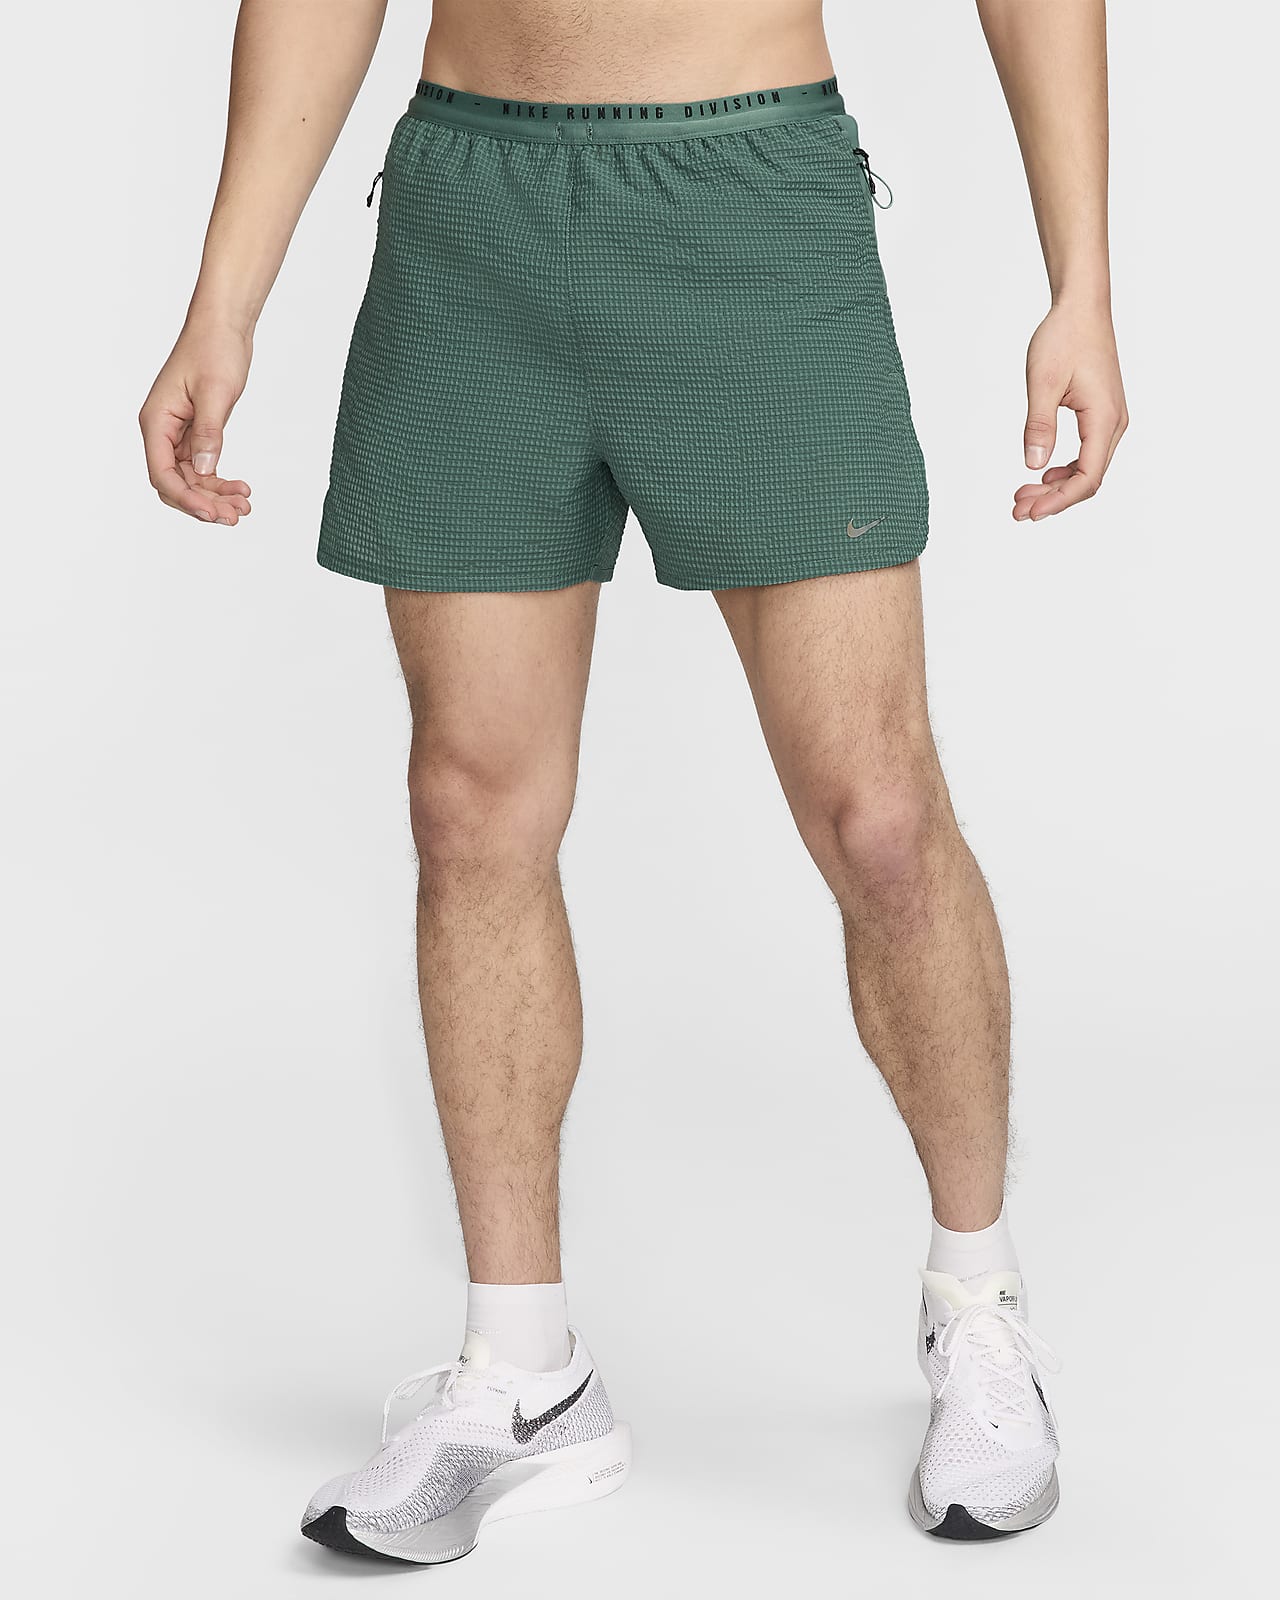 Nike Running Division Dri-FIT ADV 10 cm-es, belső rövidnadrággal bélelt férfi futórövidnadrág